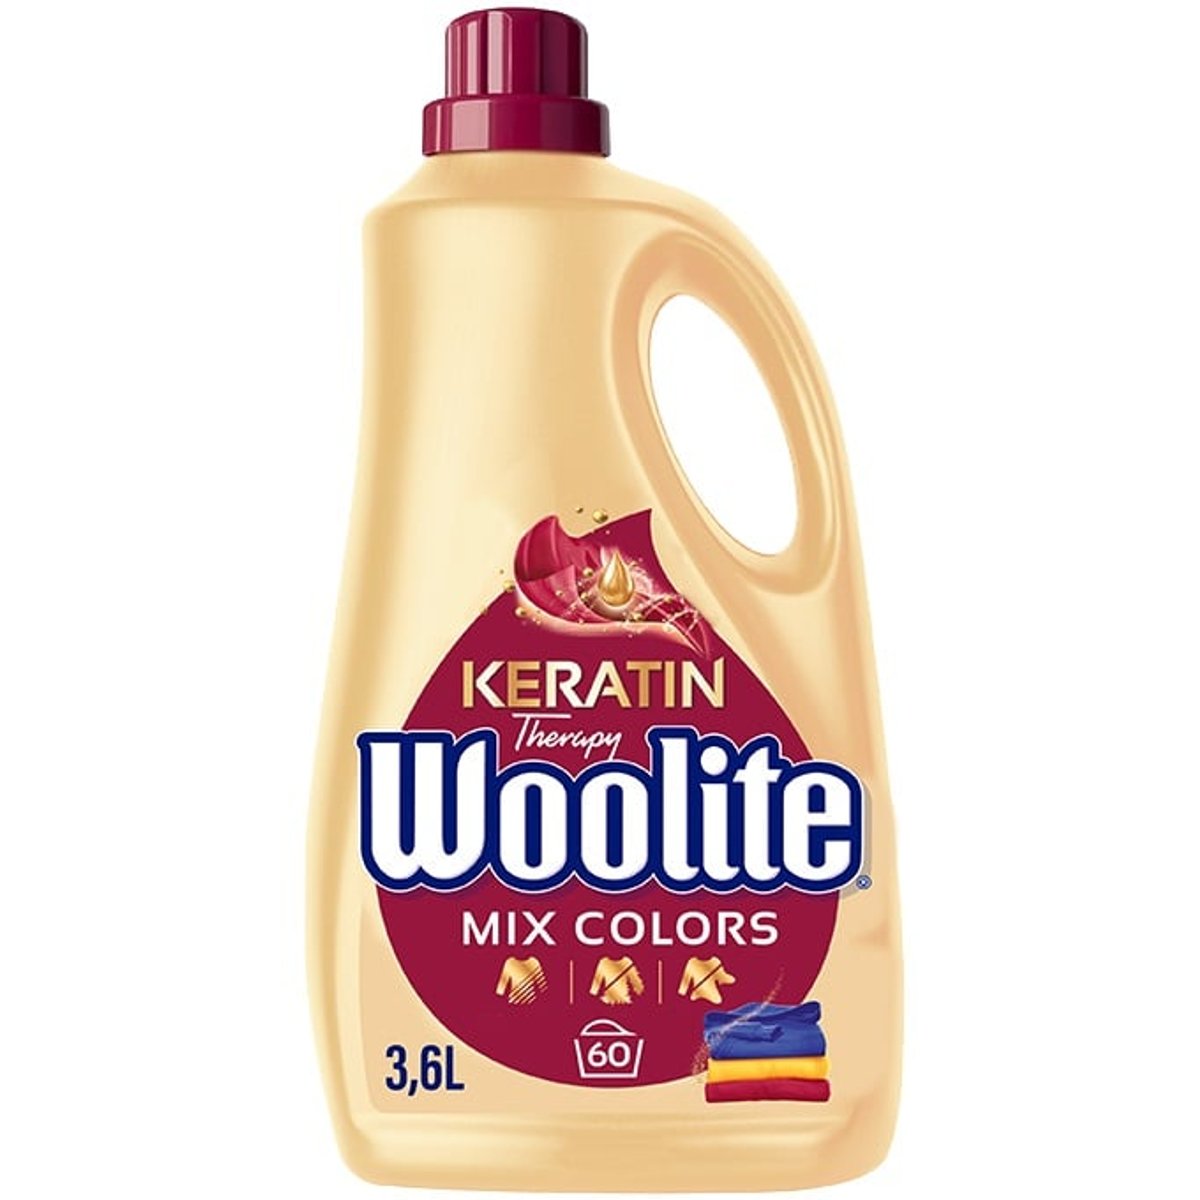 Woolite Mix Colors speciální prací prostředek (3,6 l)